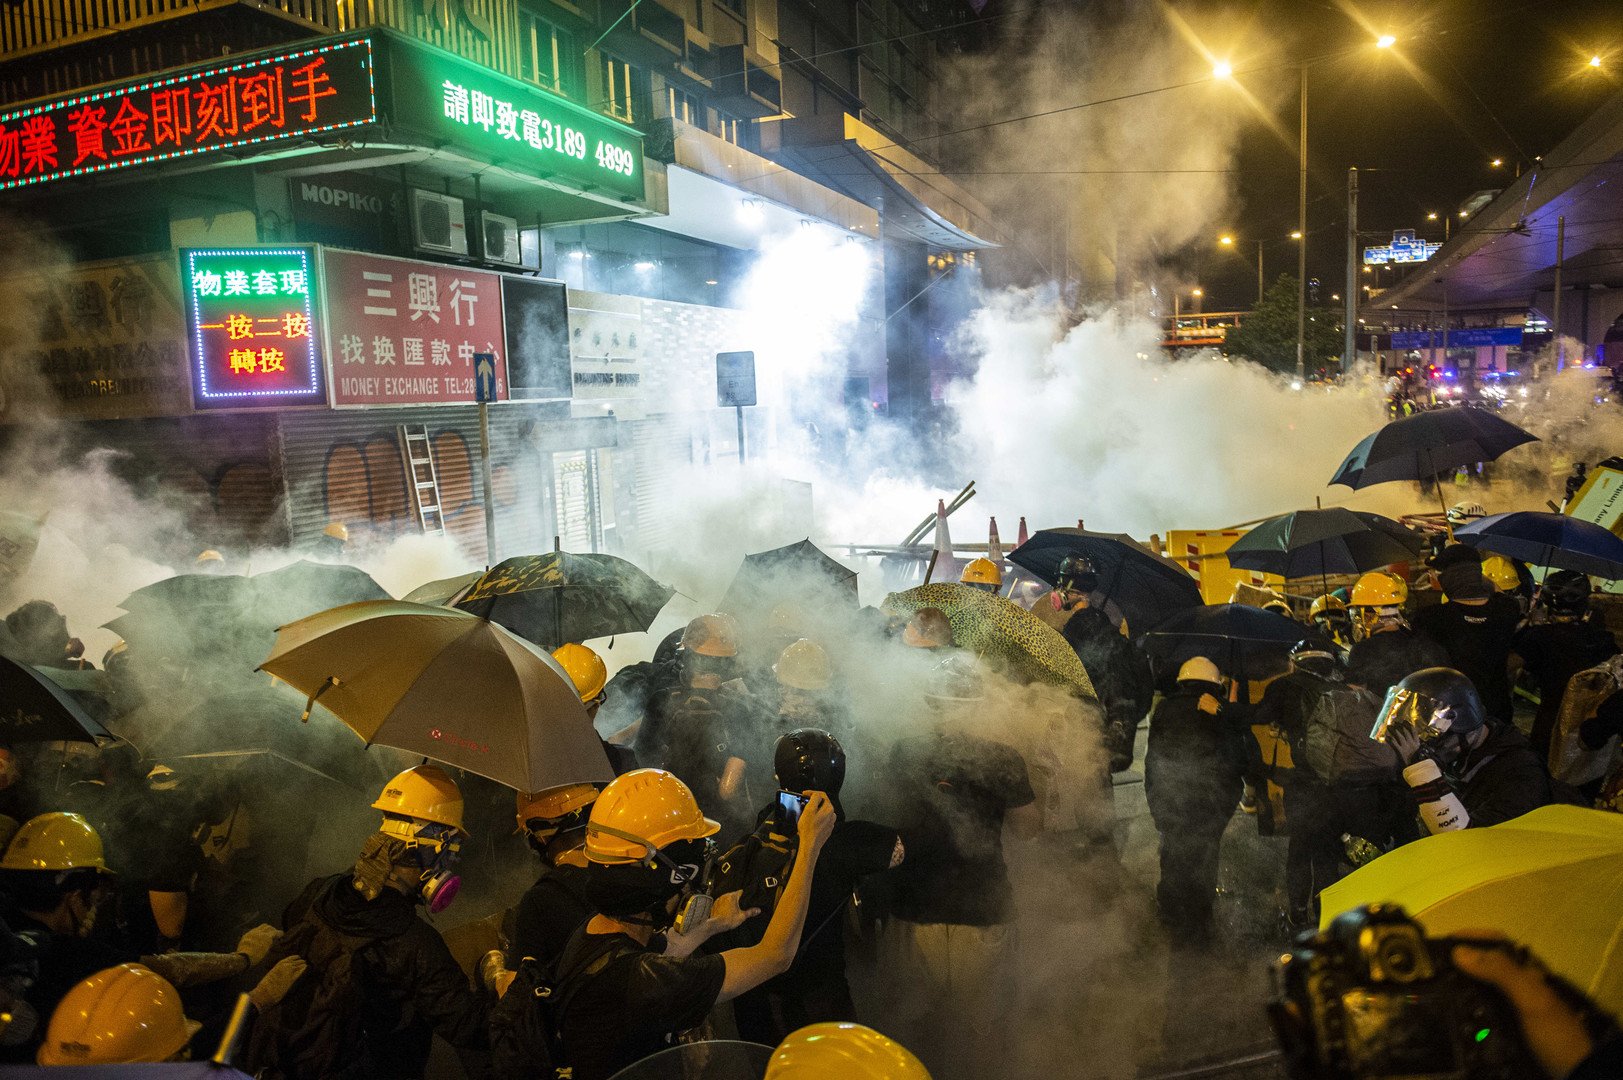 طلاء وقضبان- أسلحة الطبقة الوسطى في هونغ كونغ